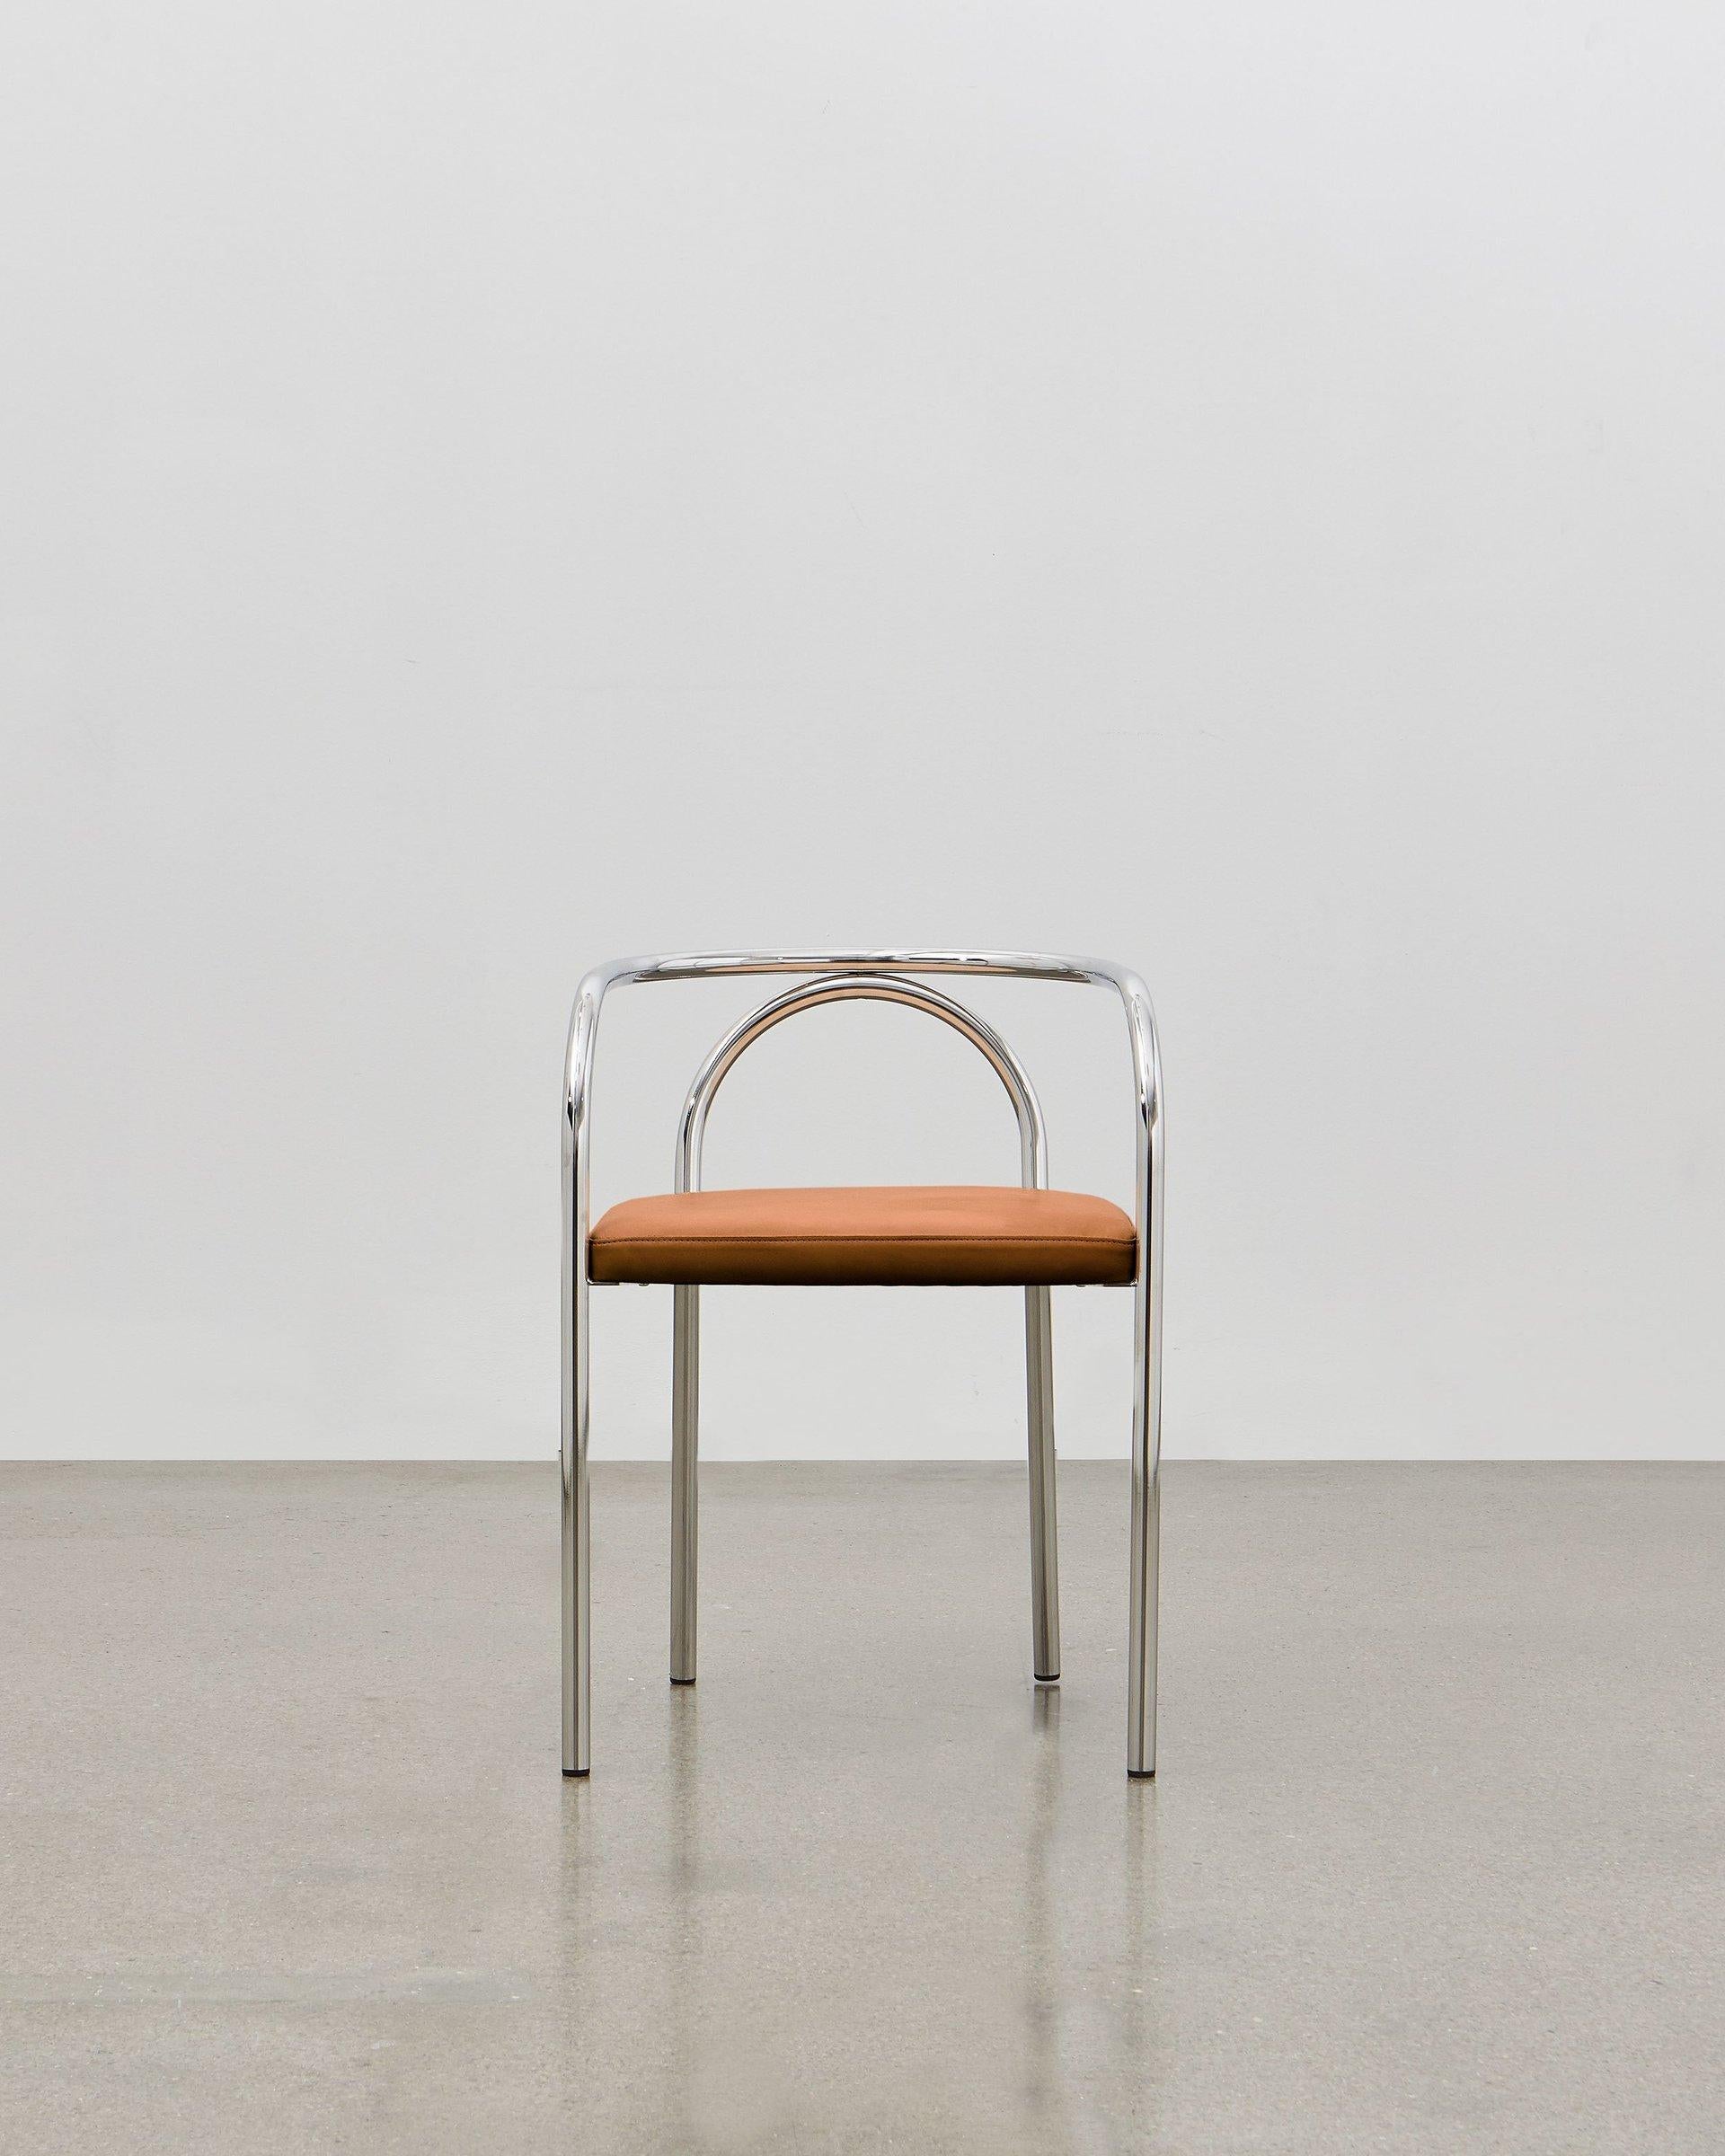 Mit dem PH Chair wollte Poul Henningsen eine Reihe klassischer Möbelentwürfe neu erfinden, die traditionell aus Holz gefertigt wurden, wie z. B. den häufig anzutreffenden Bistro